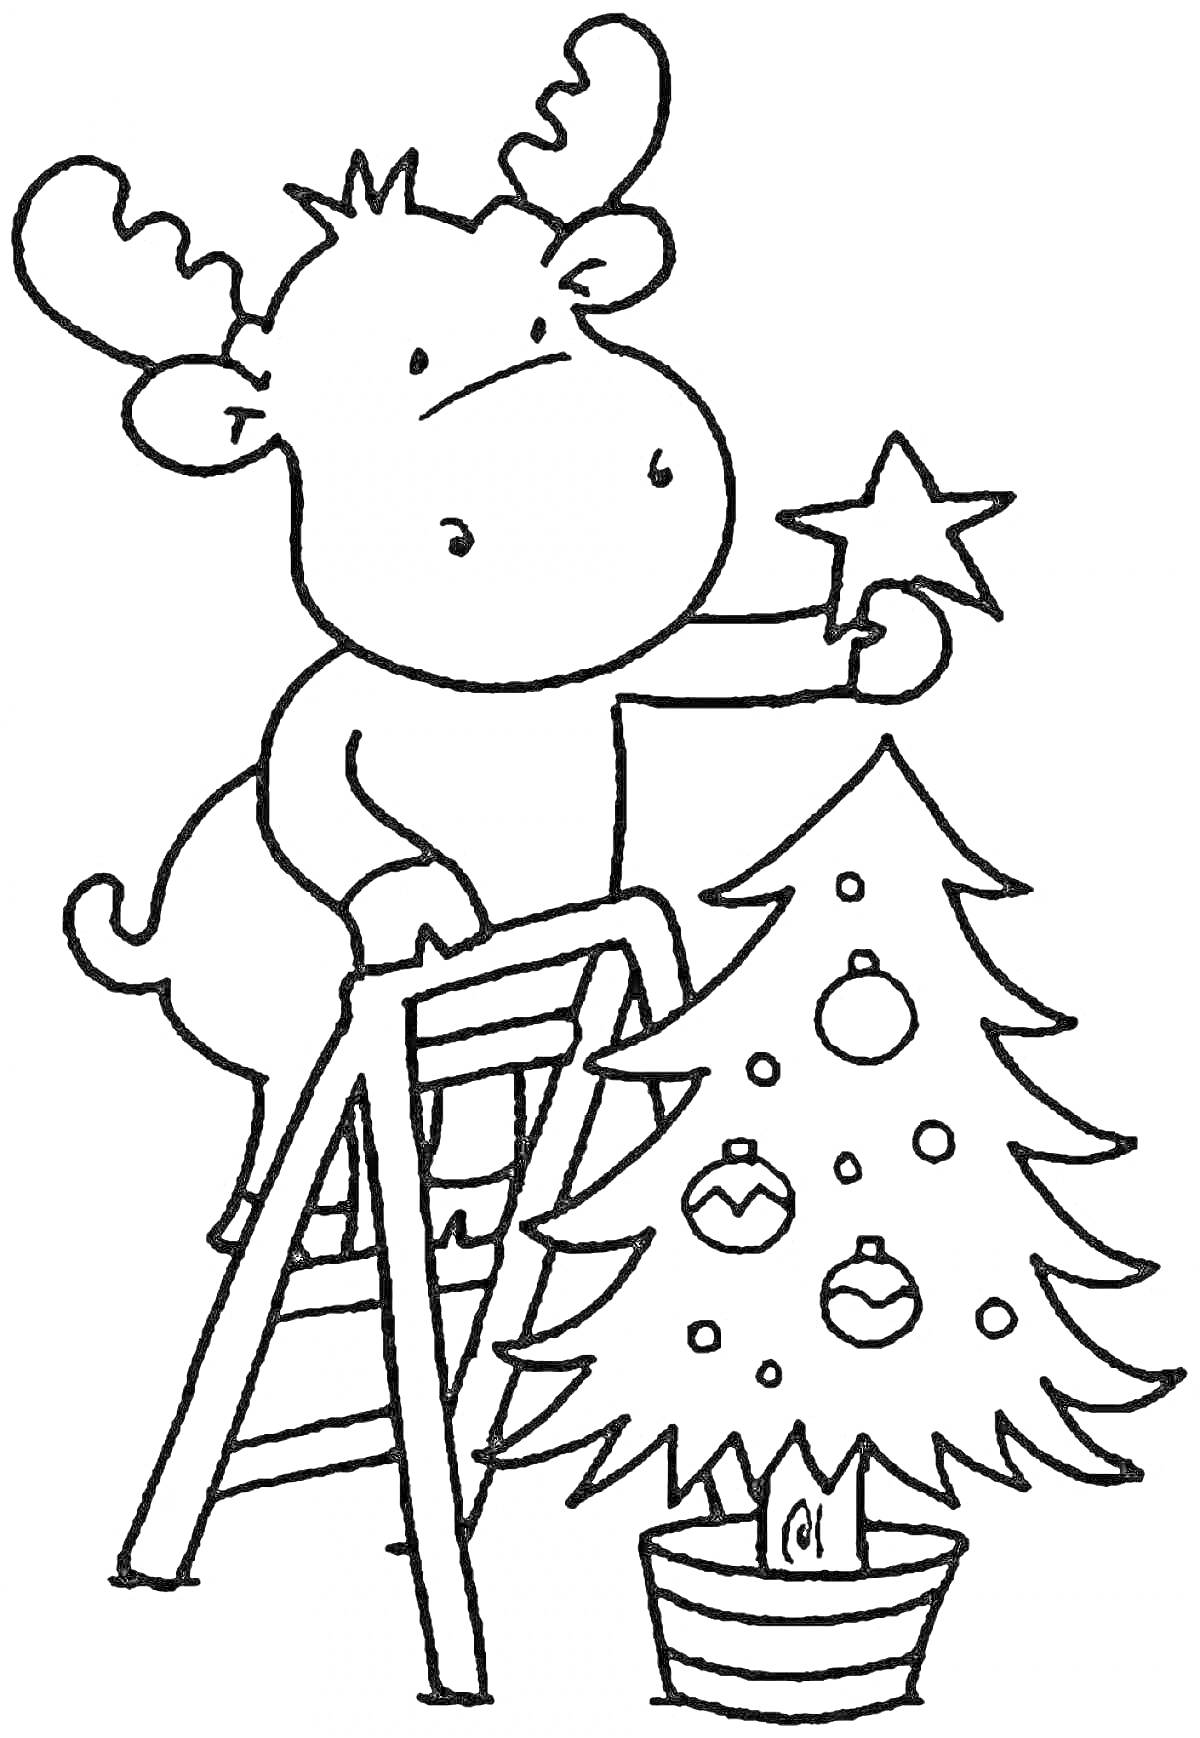 Раскраска Лось украшает рождественскую елку на стремянке игрушками и звездой